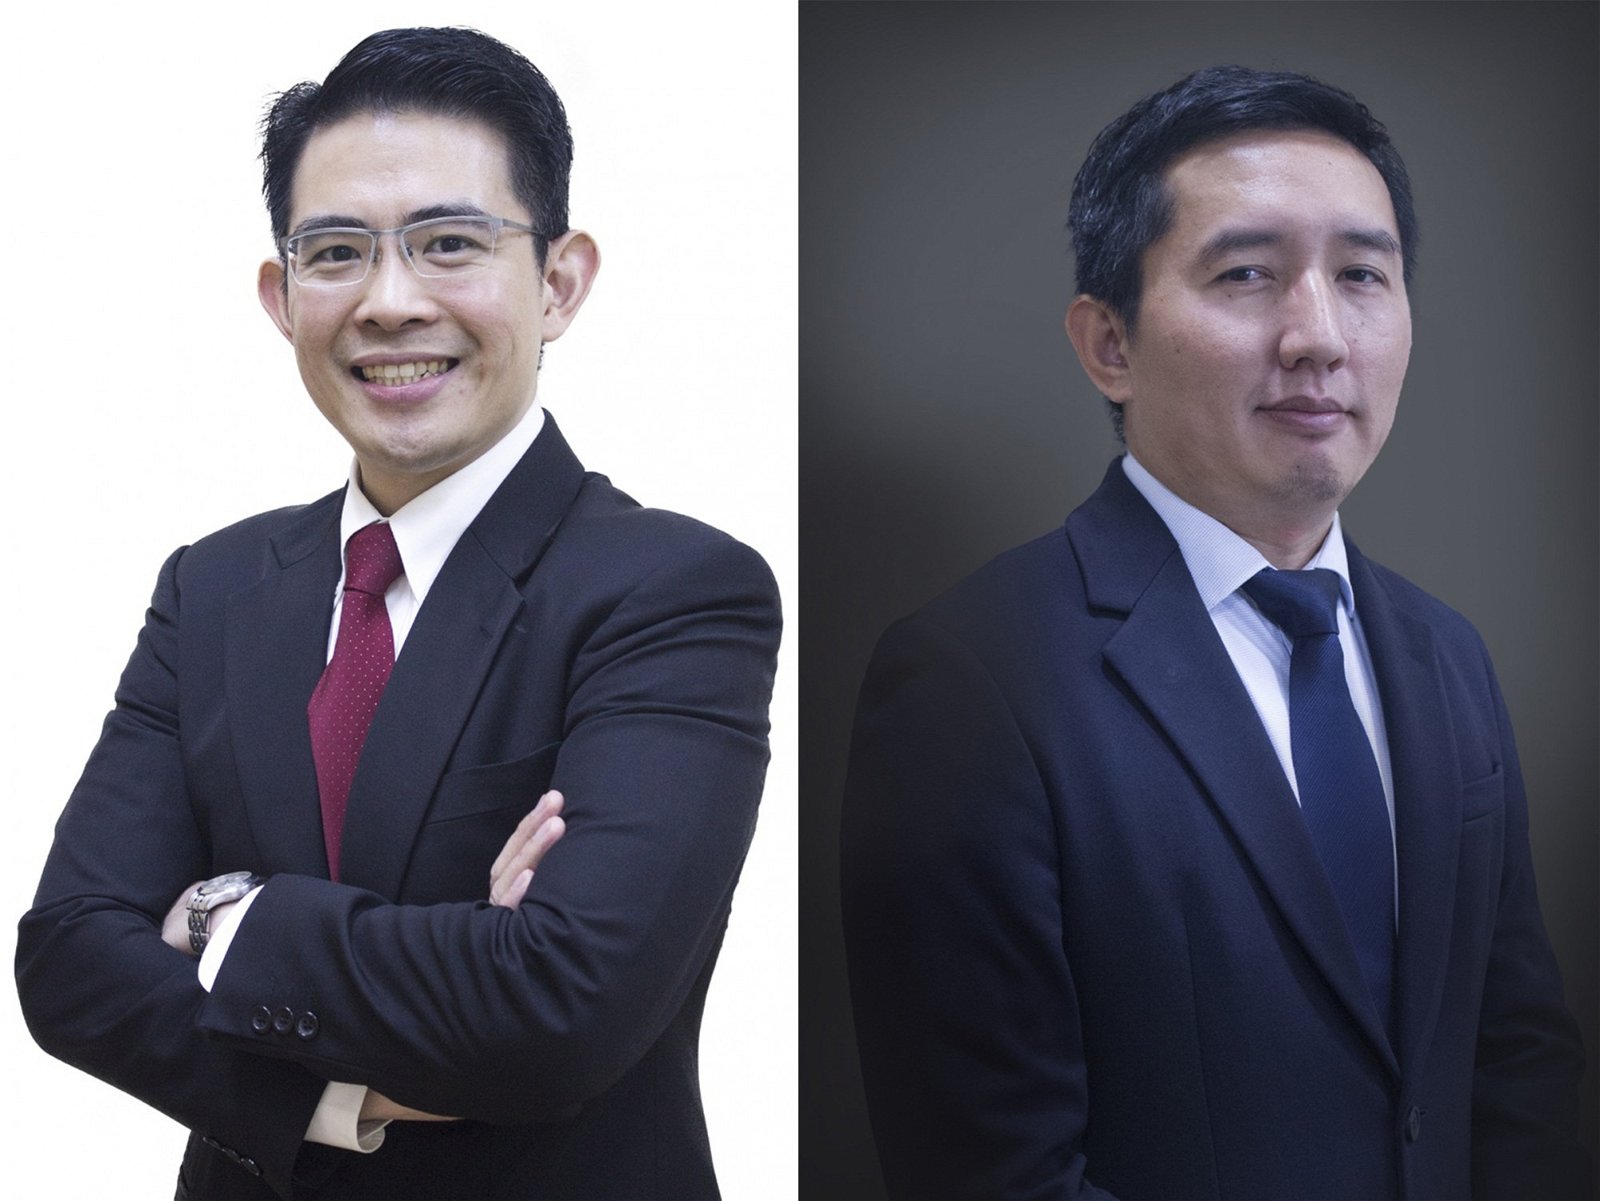 左为内分泌科谘询专家陈东文医生；右为心脏病谘询专家莫哈末卡玛尔医生。